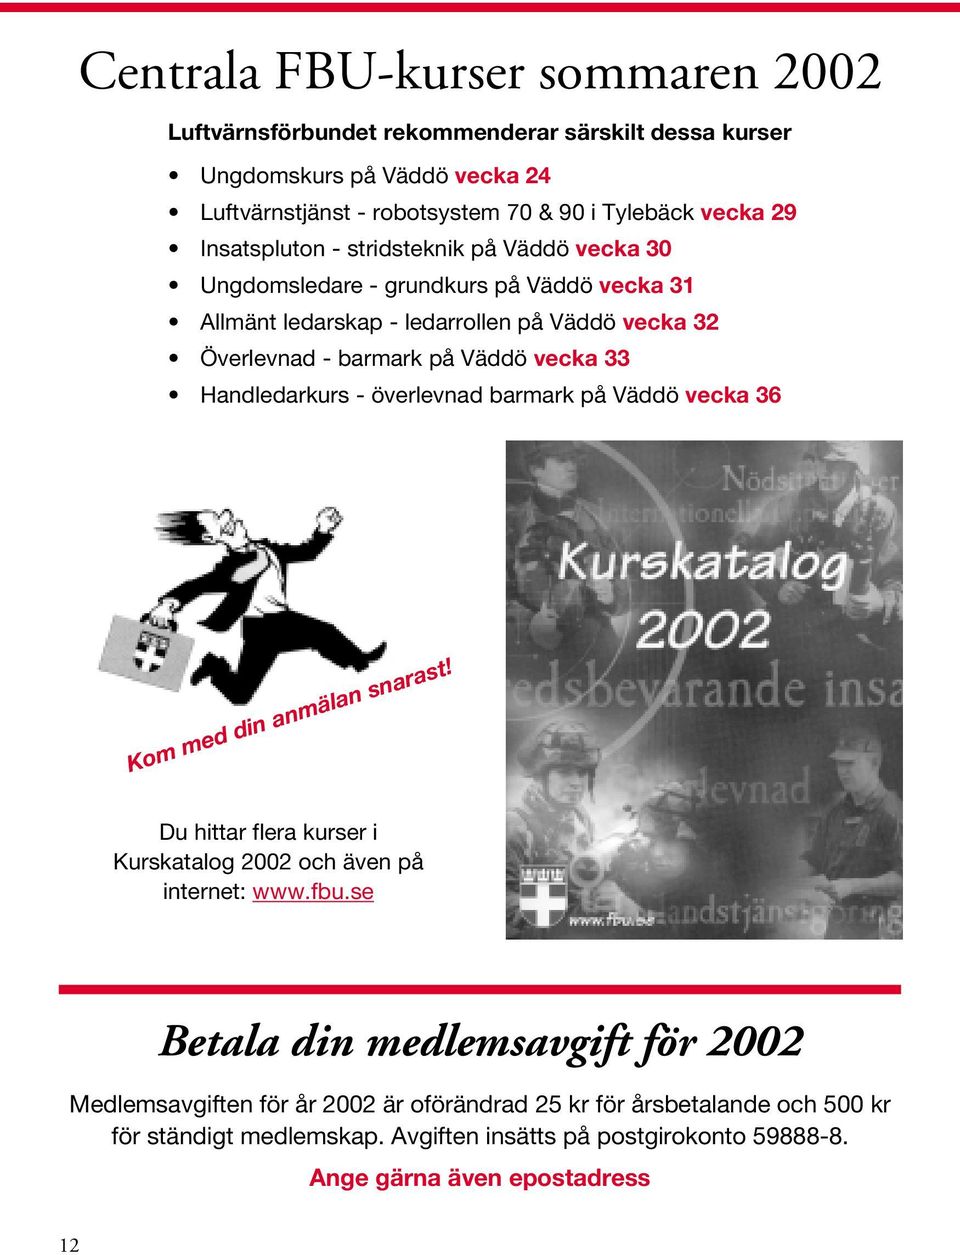 Handledarkurs - överlevnad barmark på Väddö vecka 36 Kom med din anmälan snarast! Du hittar flera kurser i Kurskatalog 2002 och även på internet: www.fbu.